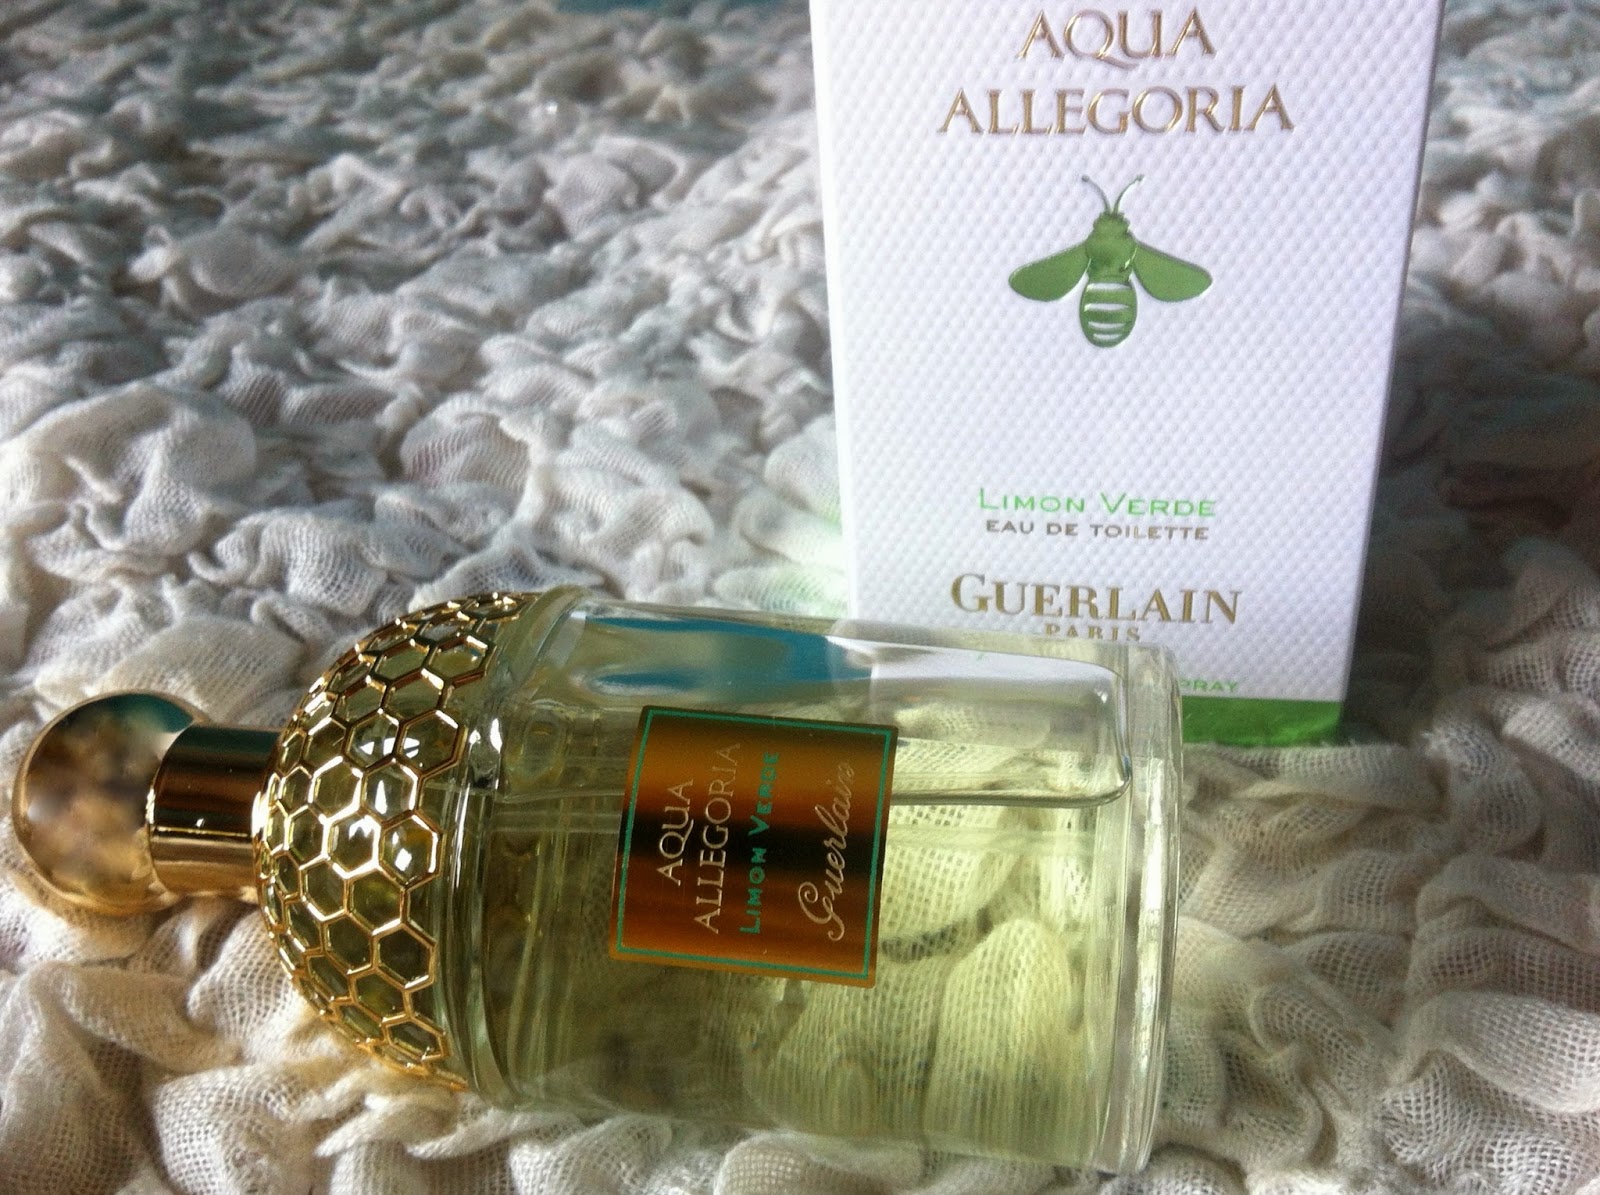 Guerlain Aqua Allegoria 2014 Limon Verde